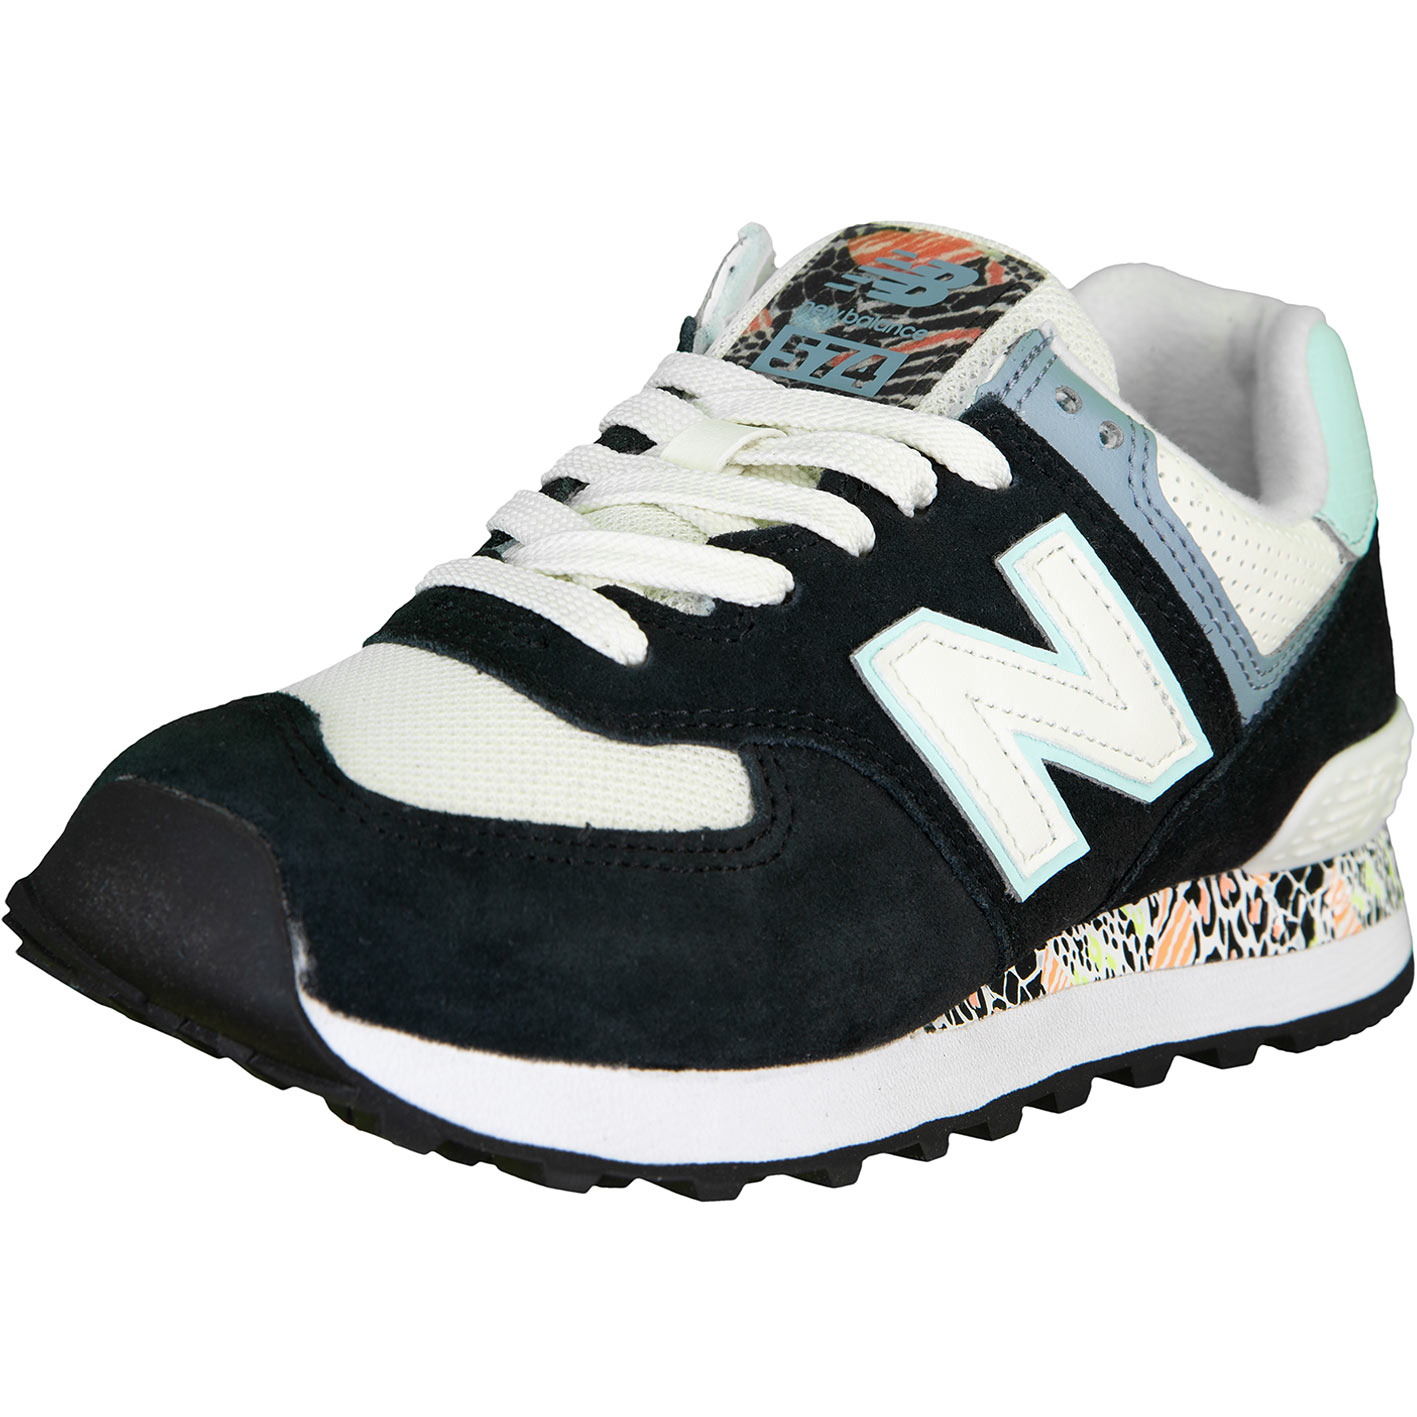 ☆ New Balance NB 574 Damen Sneaker Schuhe schwarz - hier bestellen!